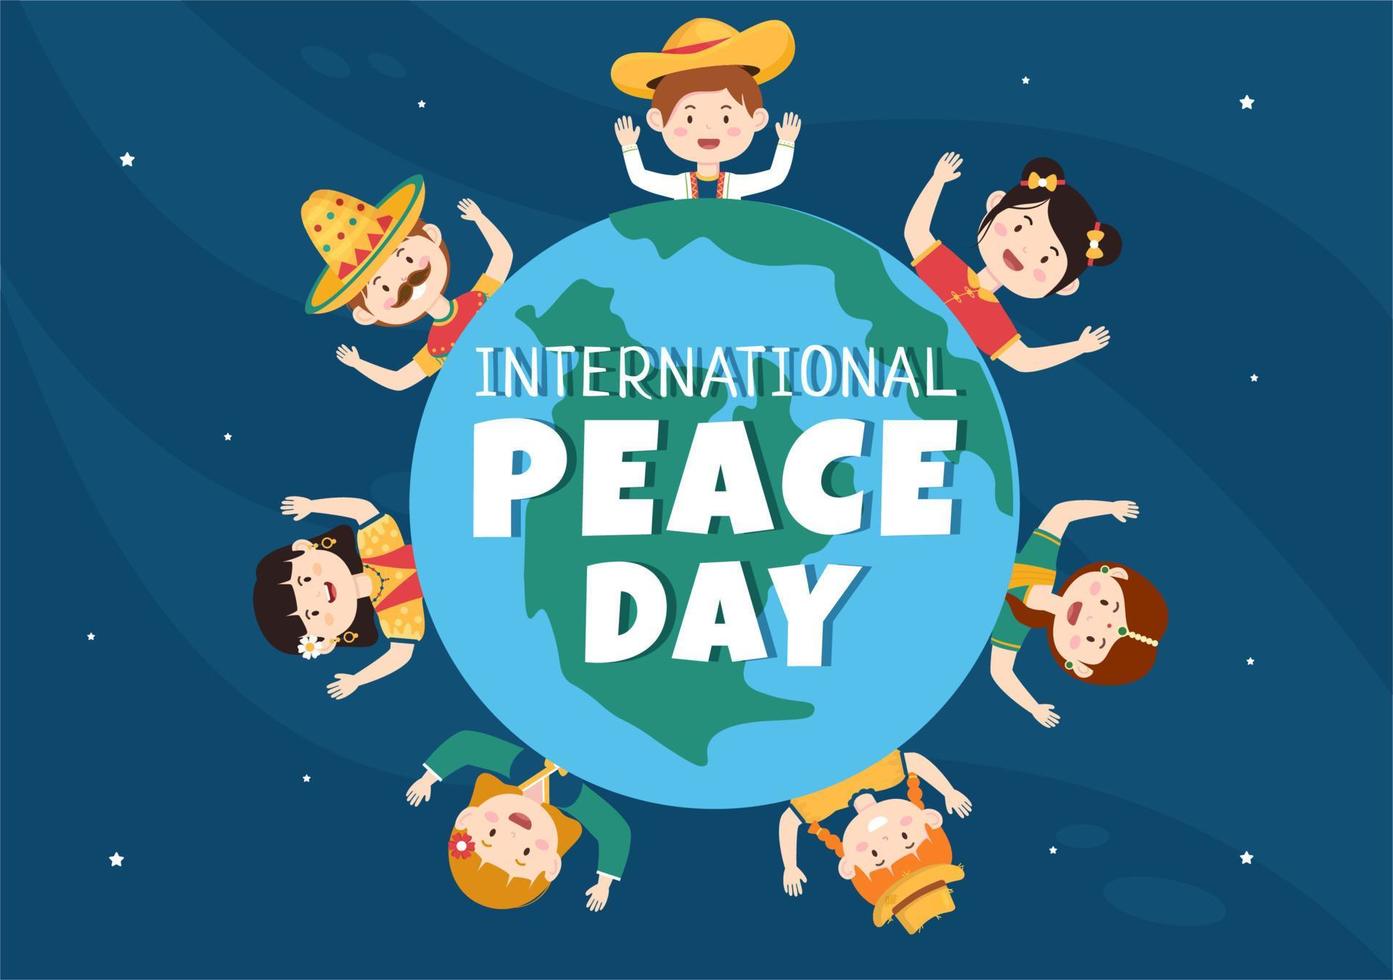 illustration de dessin animé de la journée internationale de la paix avec les mains, les enfants mignons, le globe et le ciel bleu pour créer la prospérité dans le monde dans un style plat vecteur